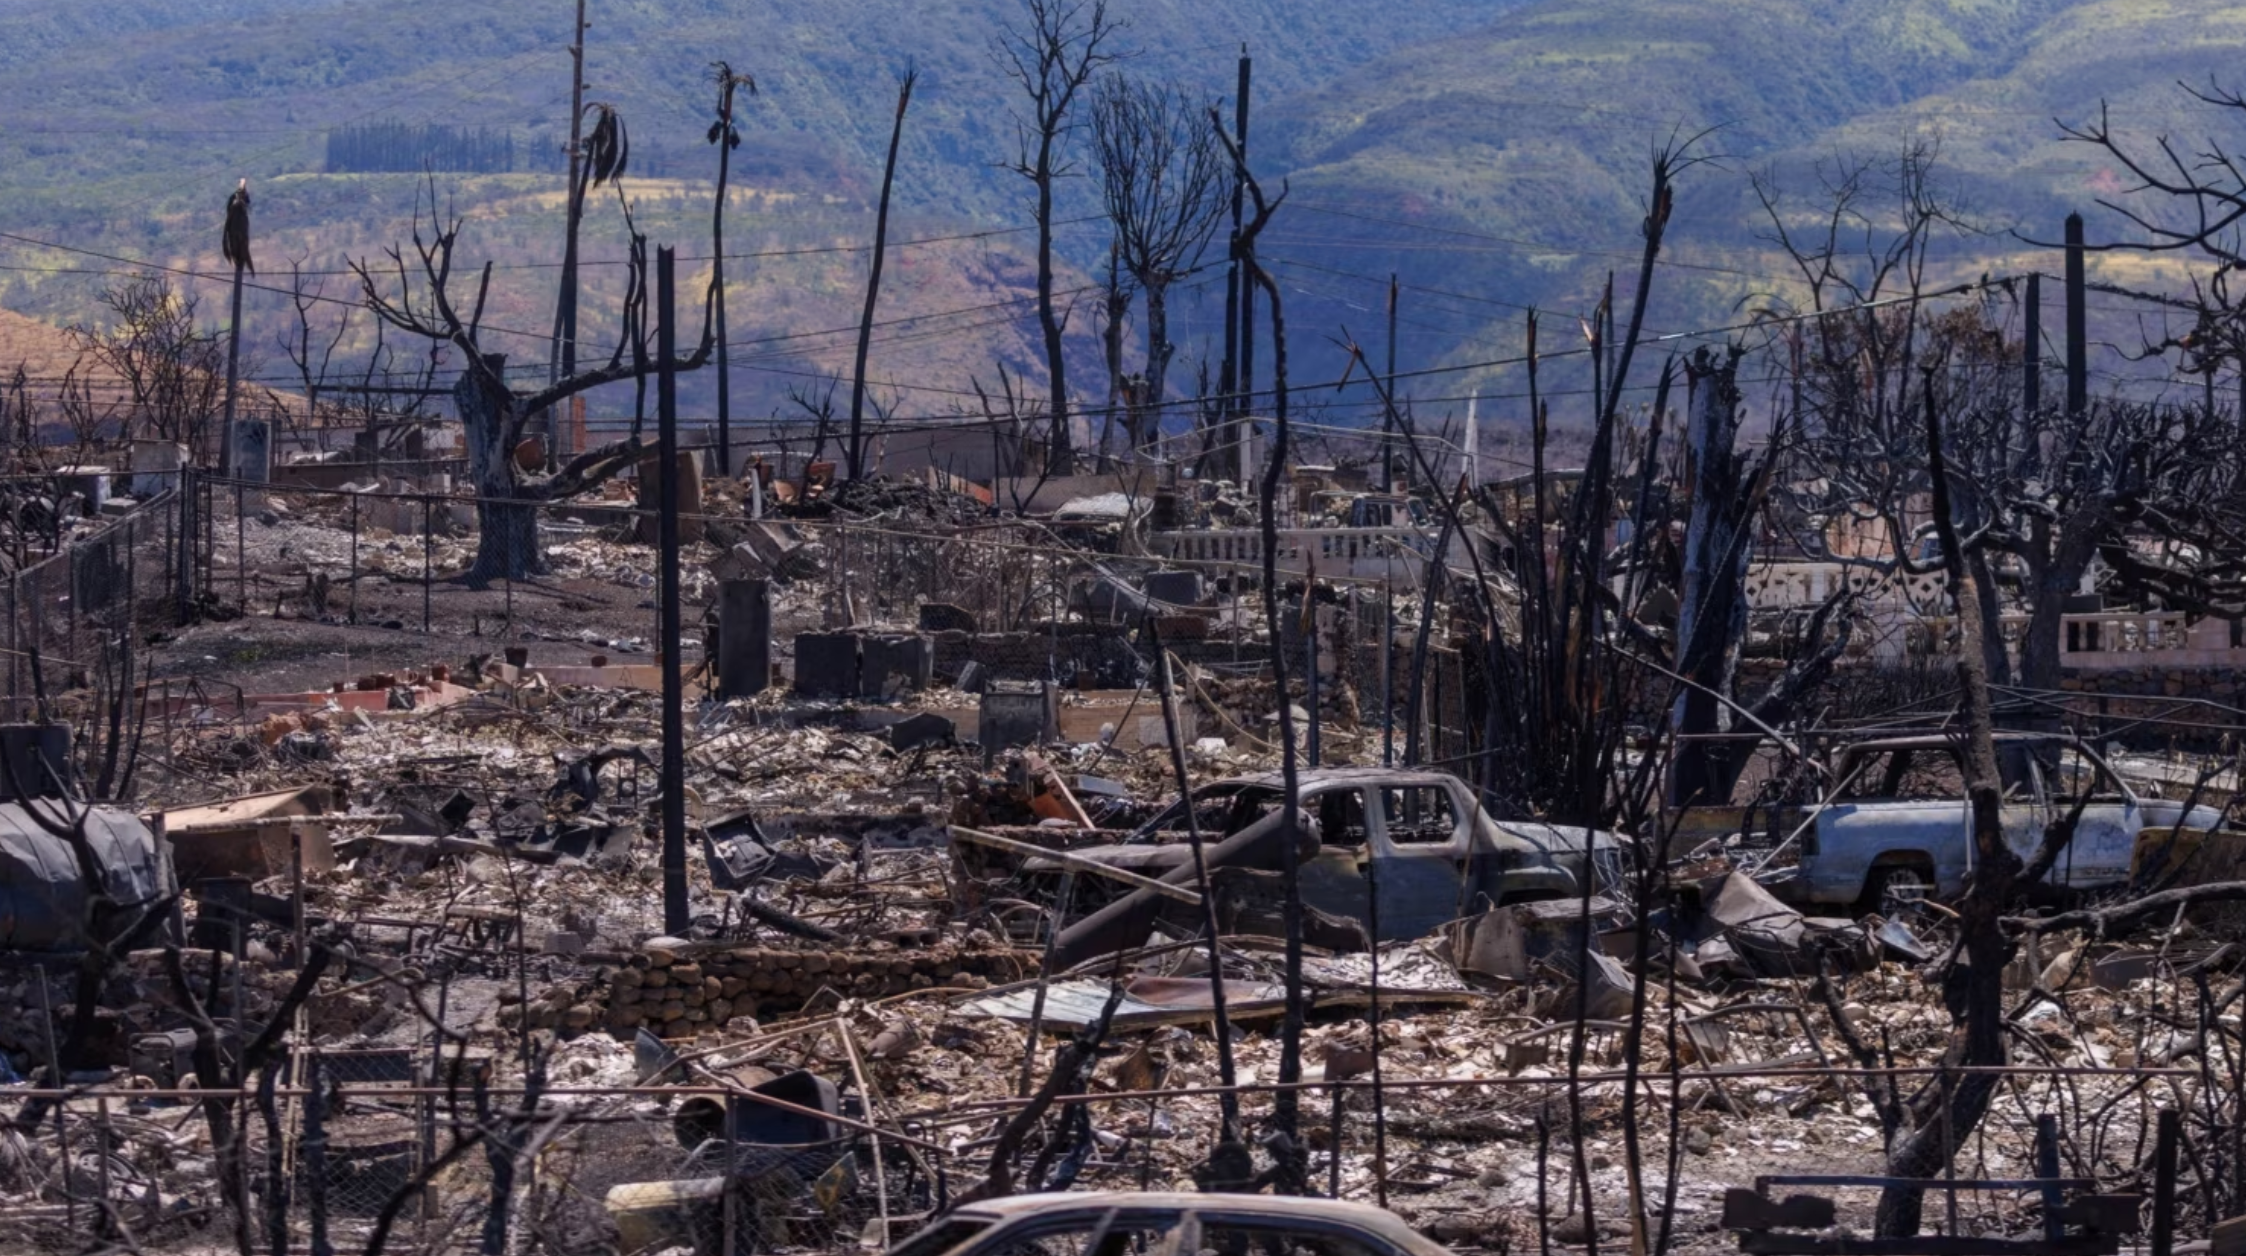 Hawaii: Maui Fire Death Toll Reaches 106